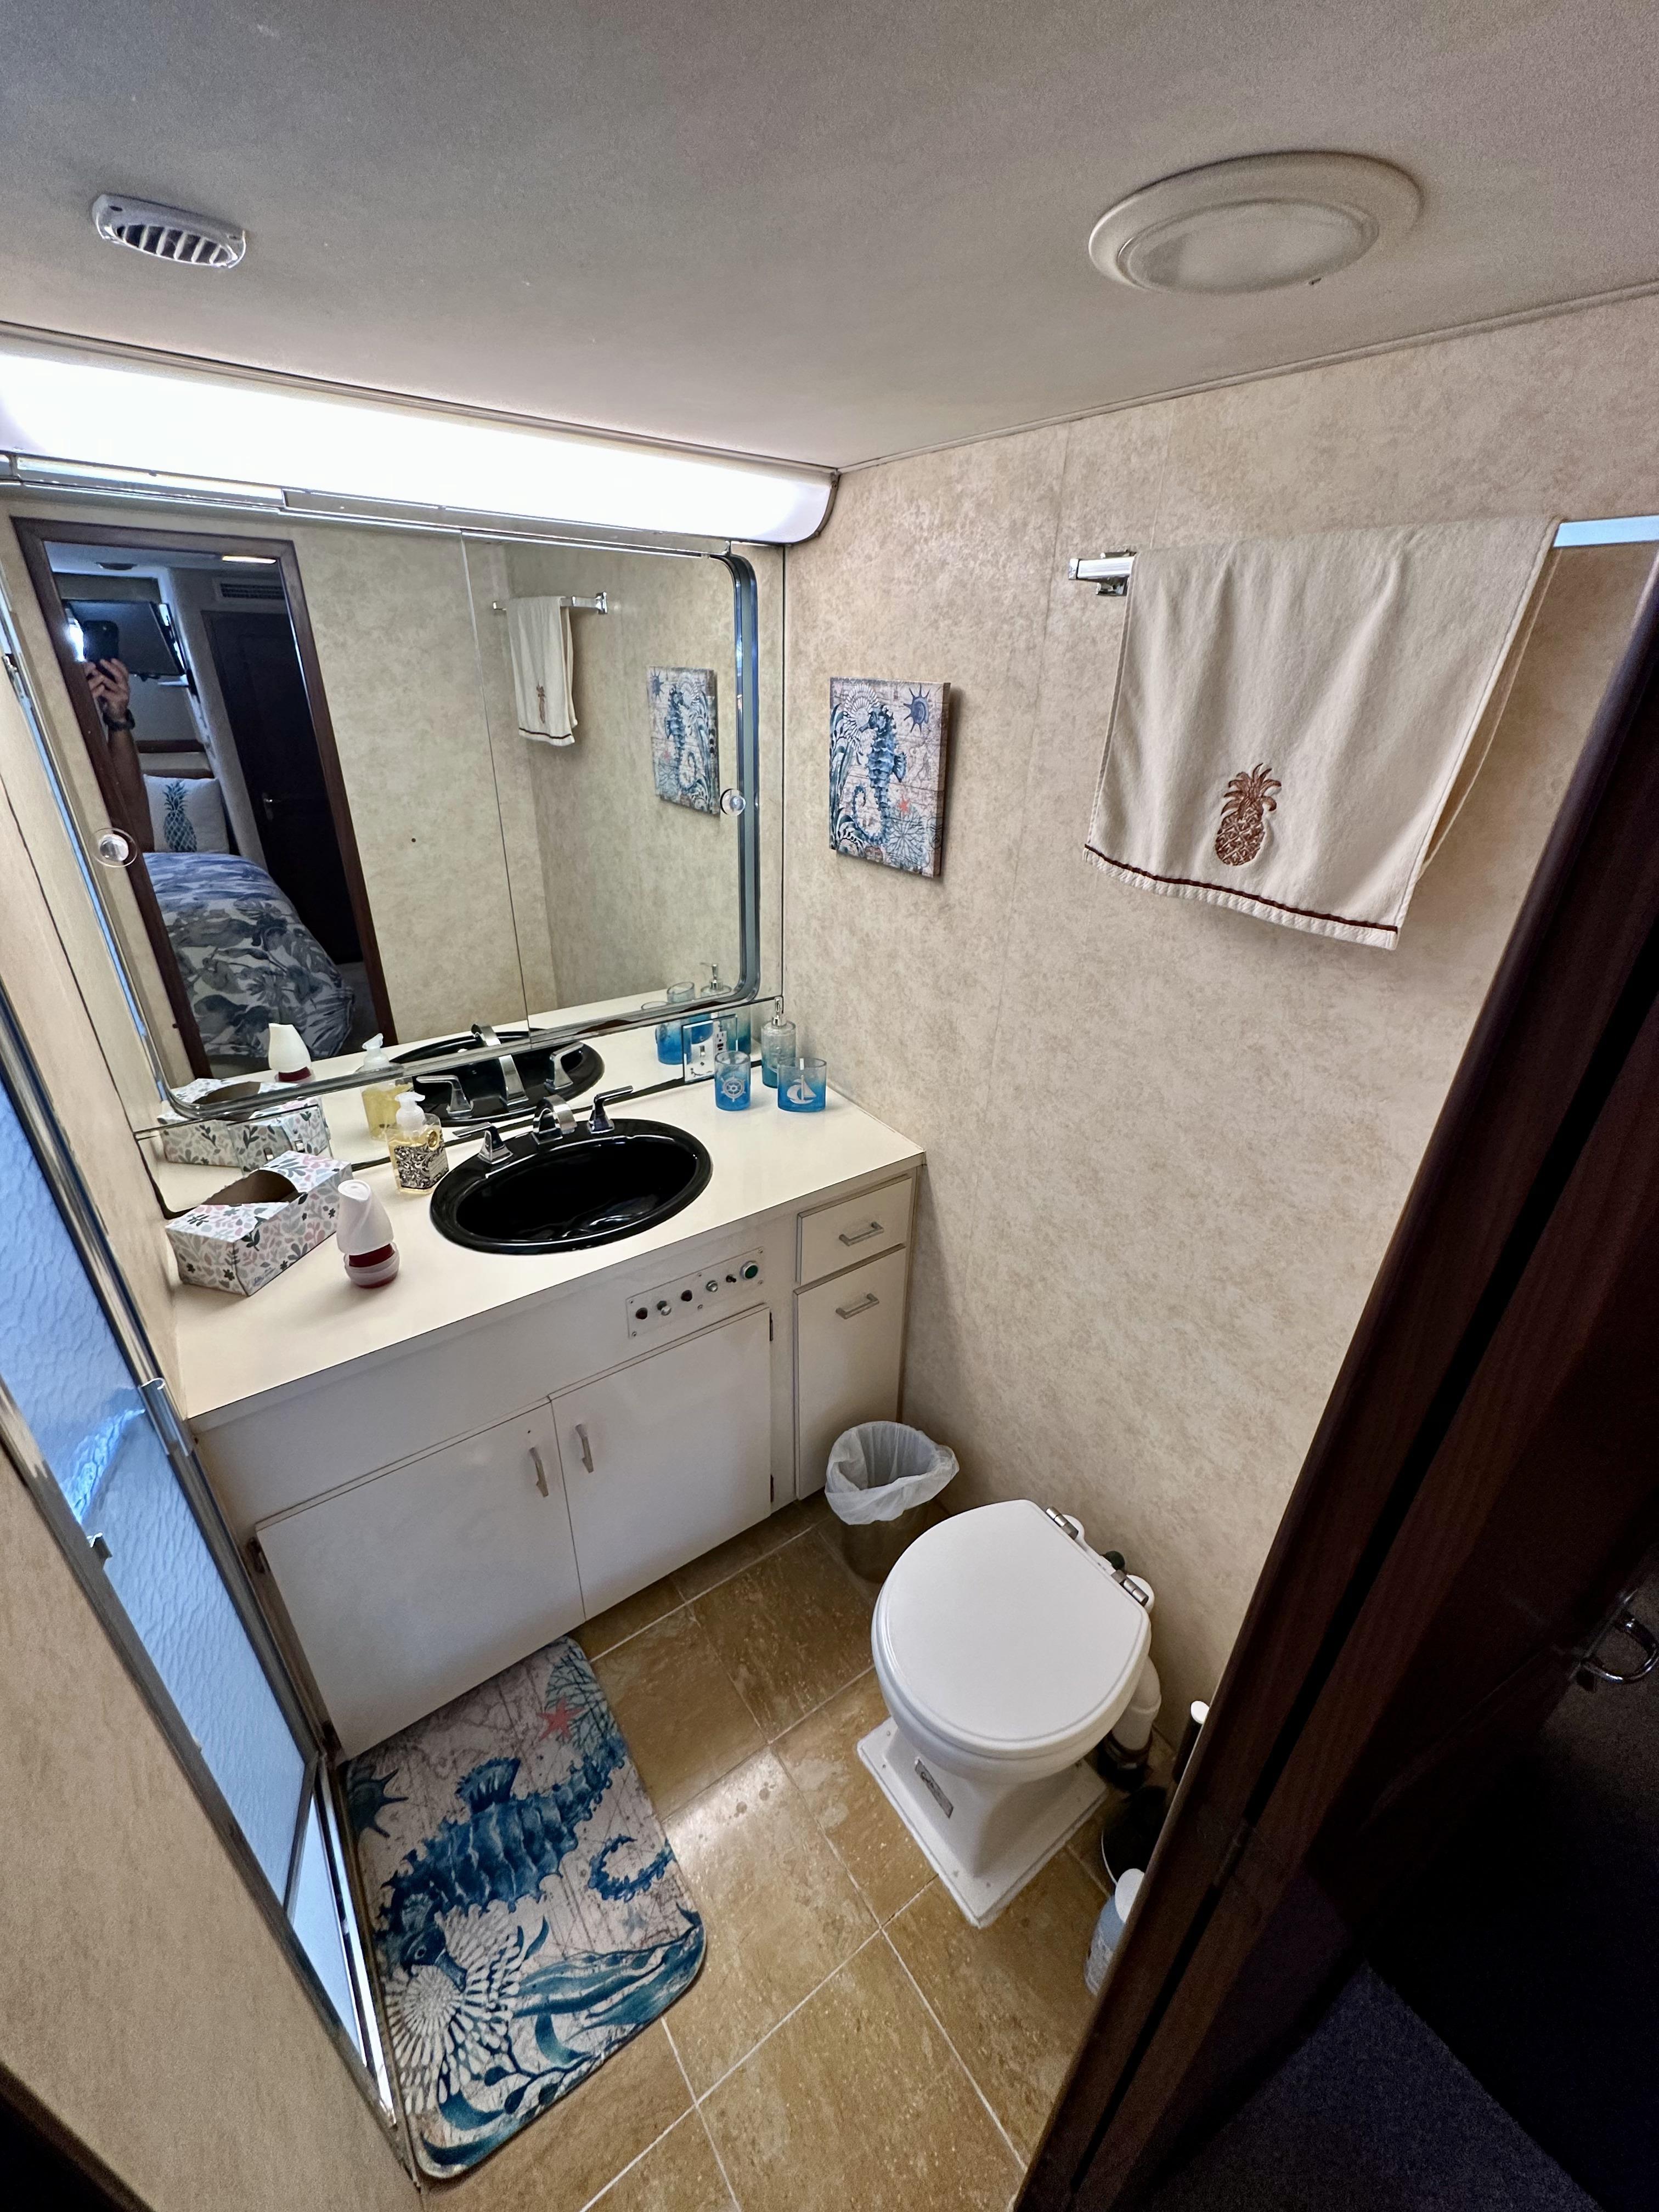 Hatteras 70 Conundrum - Head, Sink and Walkin Shower